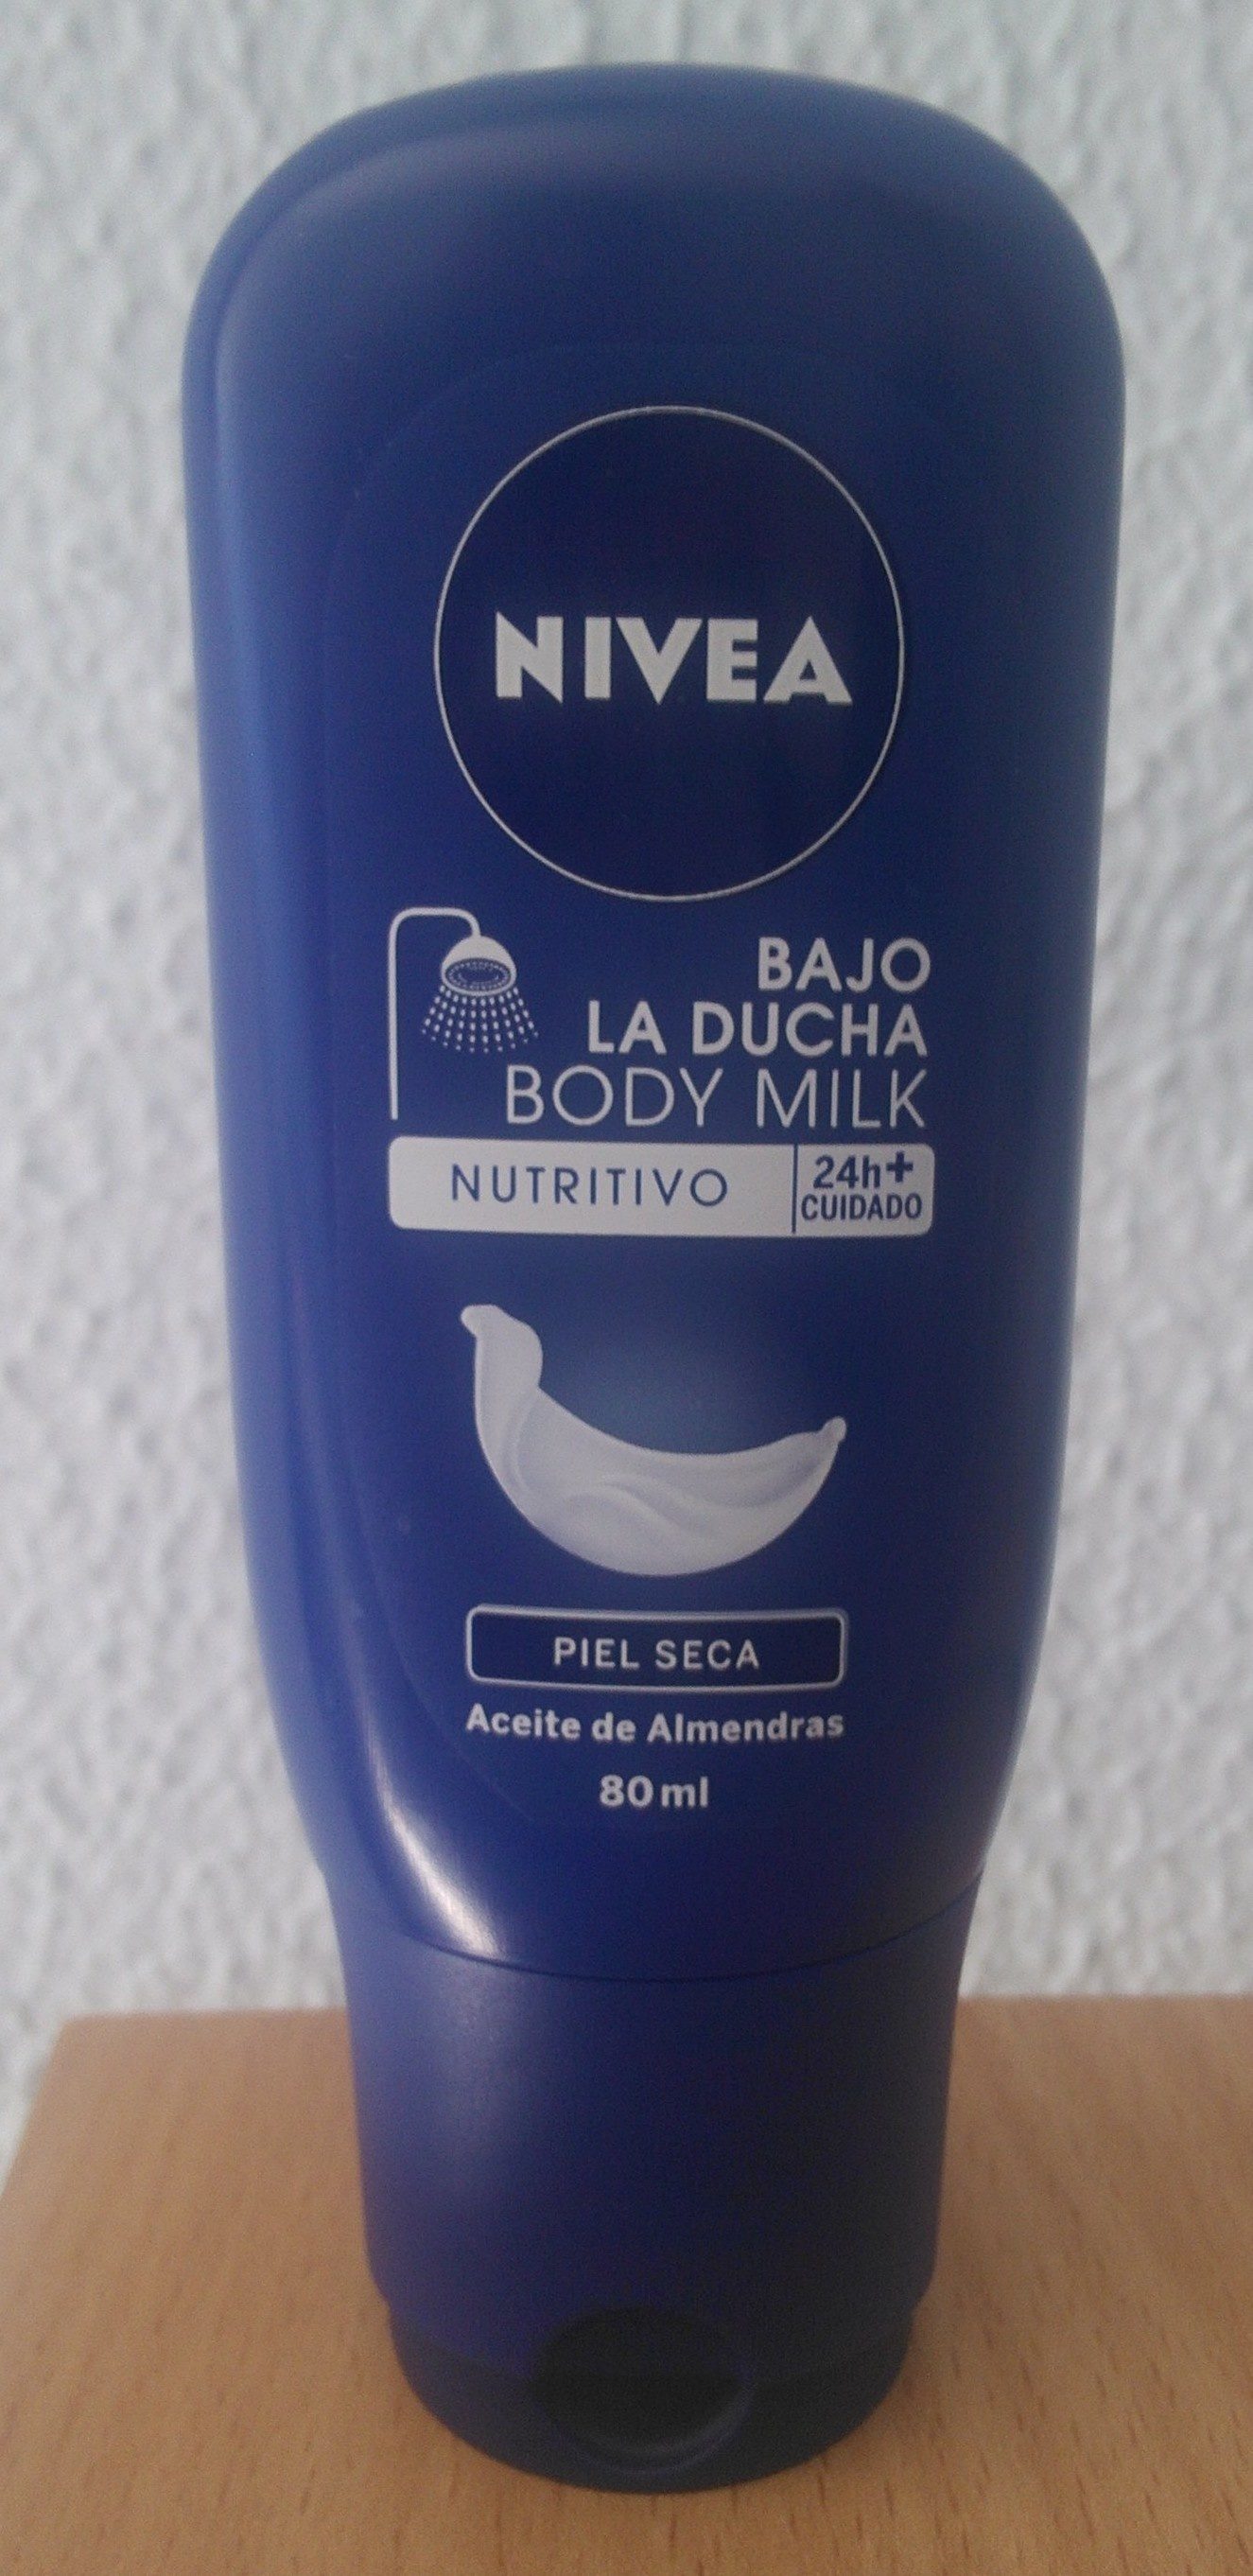 En la madrugada trigo Aleta Nivea bajo la ducha body milk - 80 g